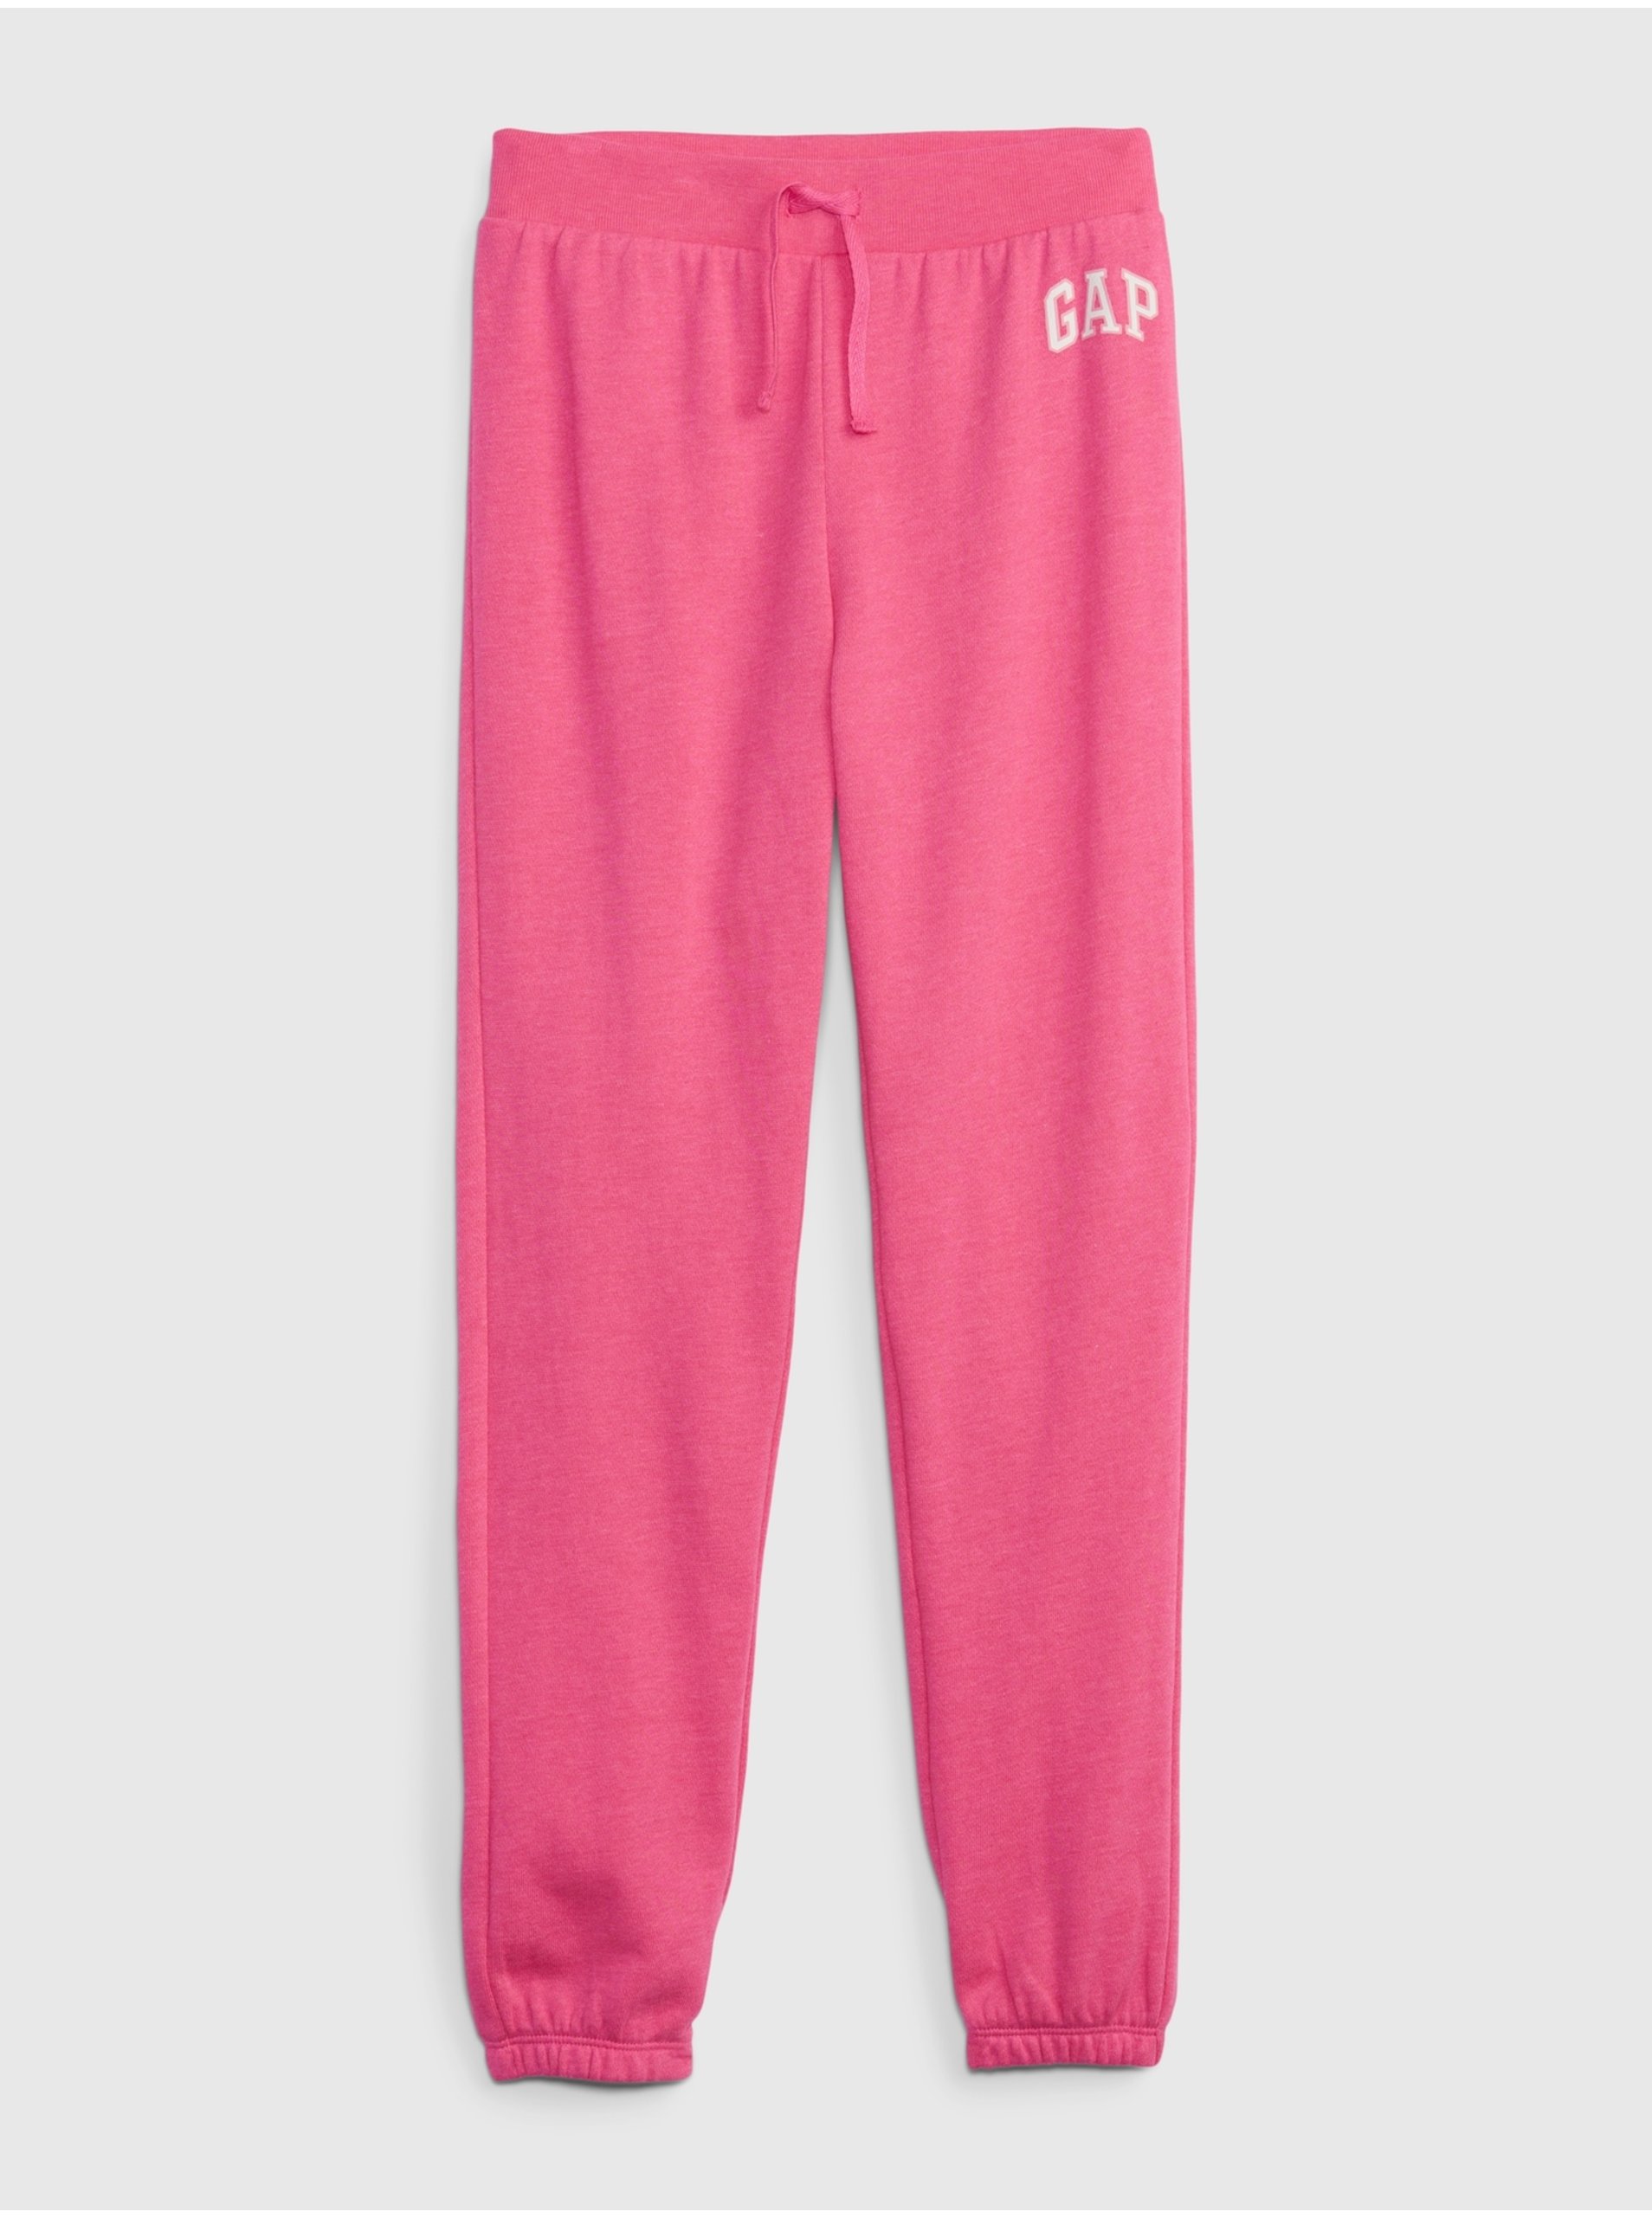 E-shop Růžové holčičí tepláky jogger logo GAP french terry